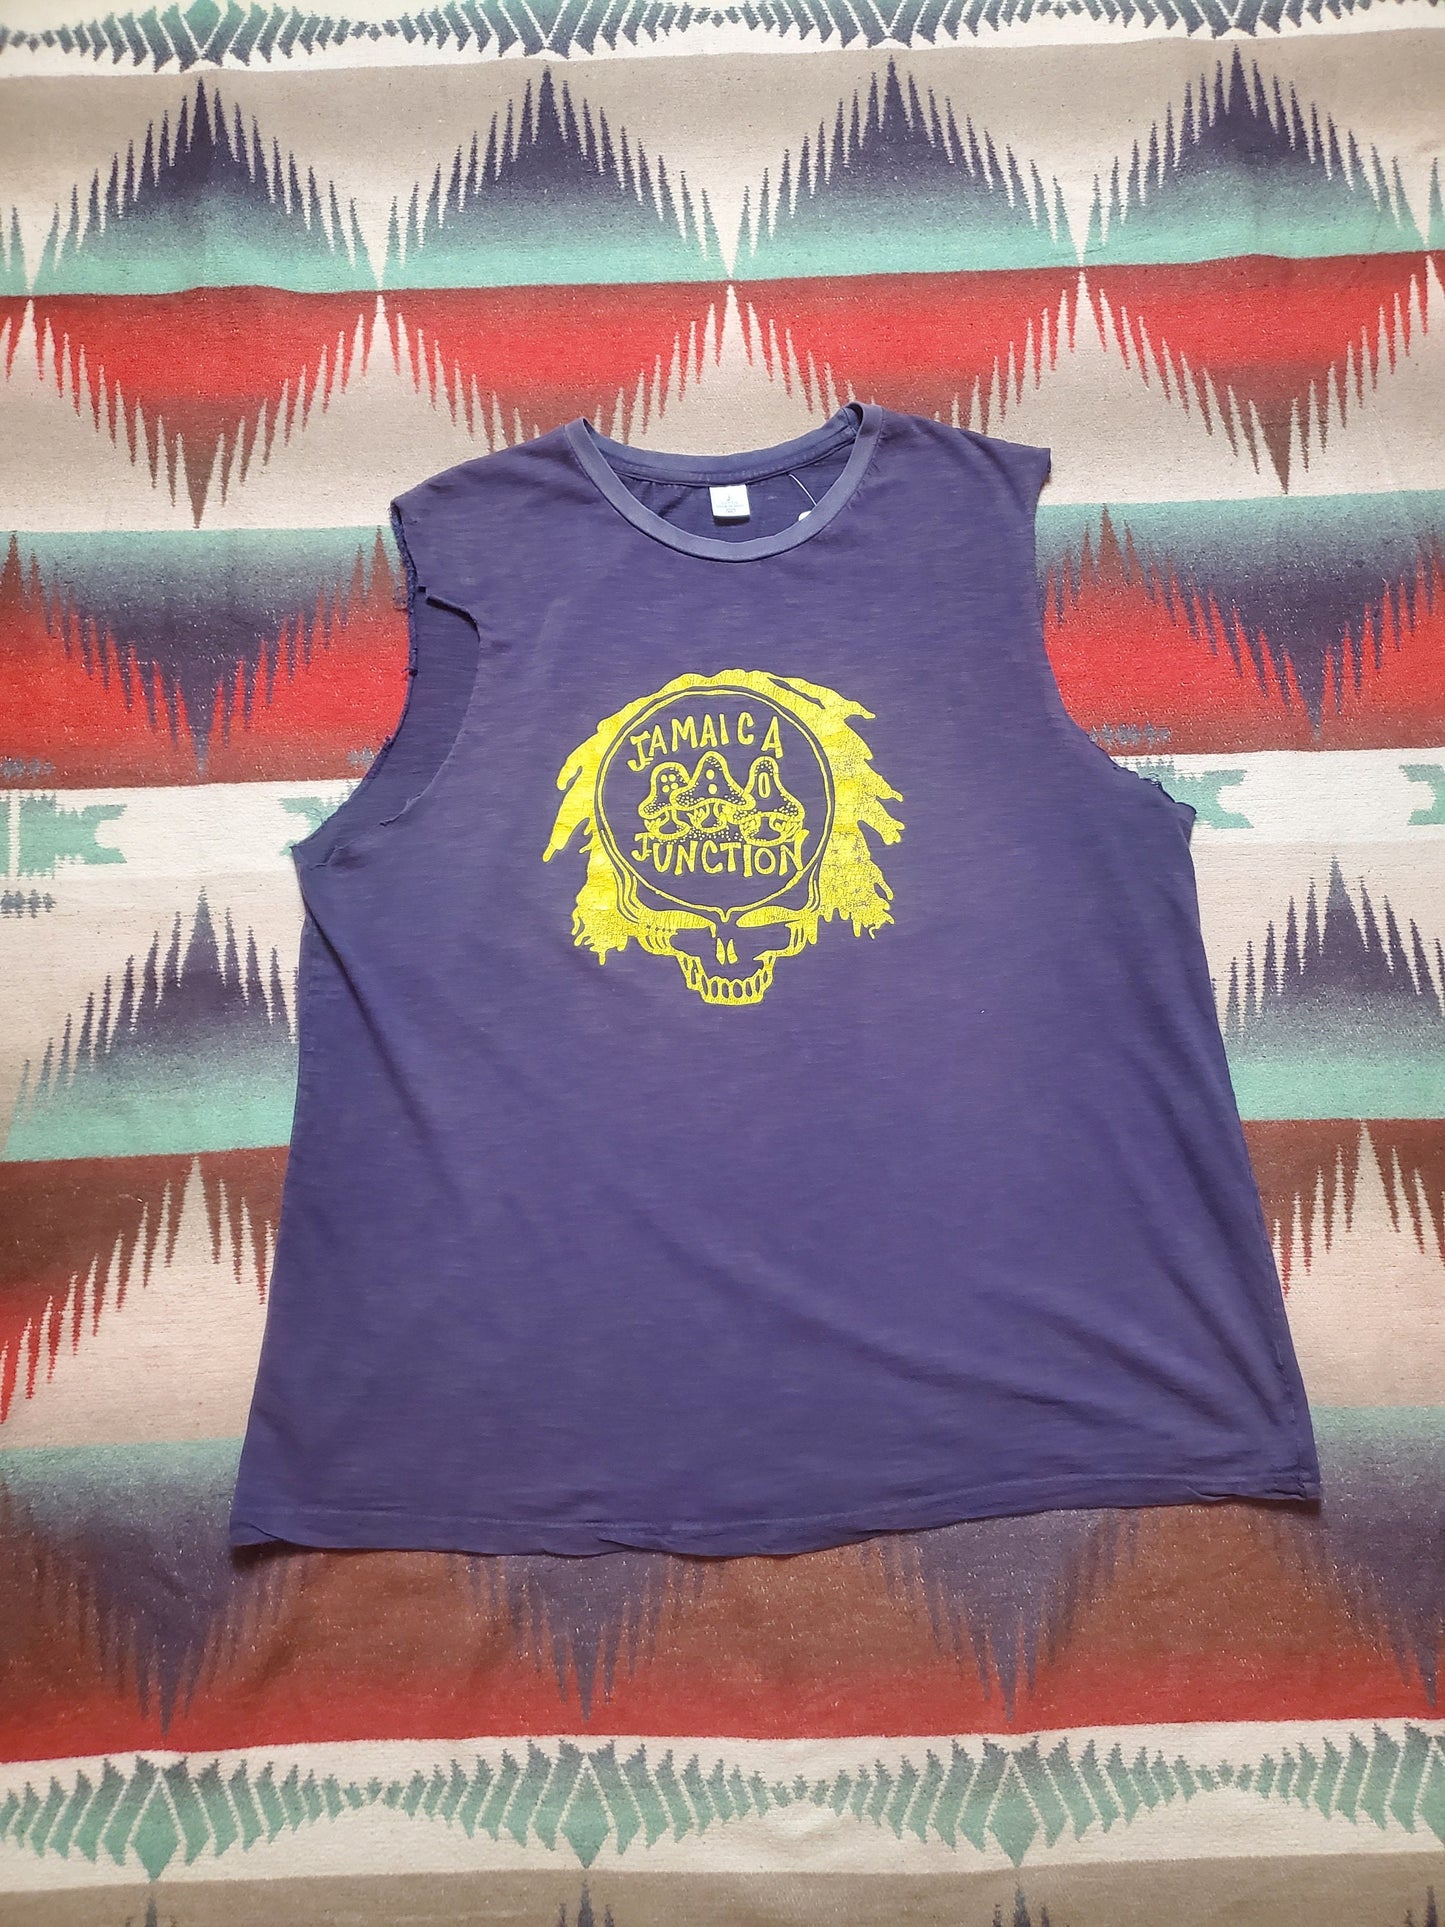 1990s/2000s Grateful Dead Stealie Logo Jamaica Junction Lot T-Shirt Cutoff Tanktop Size XL